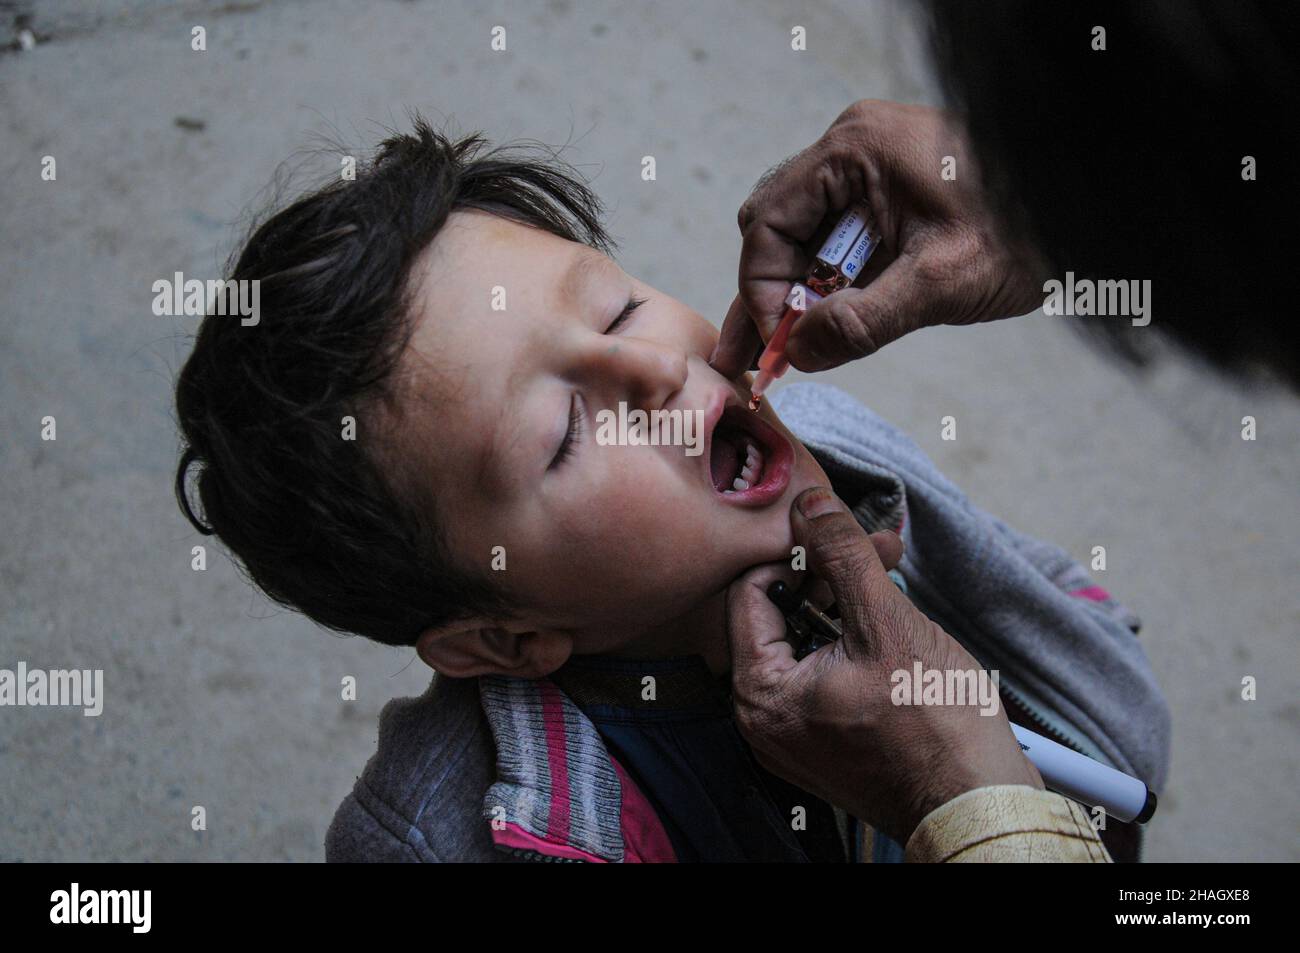 RAWALPINDI, Pakistan - 13 dicembre: Un operatore sanitario somministra il vaccino antipolio a un bambino durante un attacco antipolio a Rawalpindi il 13 dicembre 2021 Foto Stock